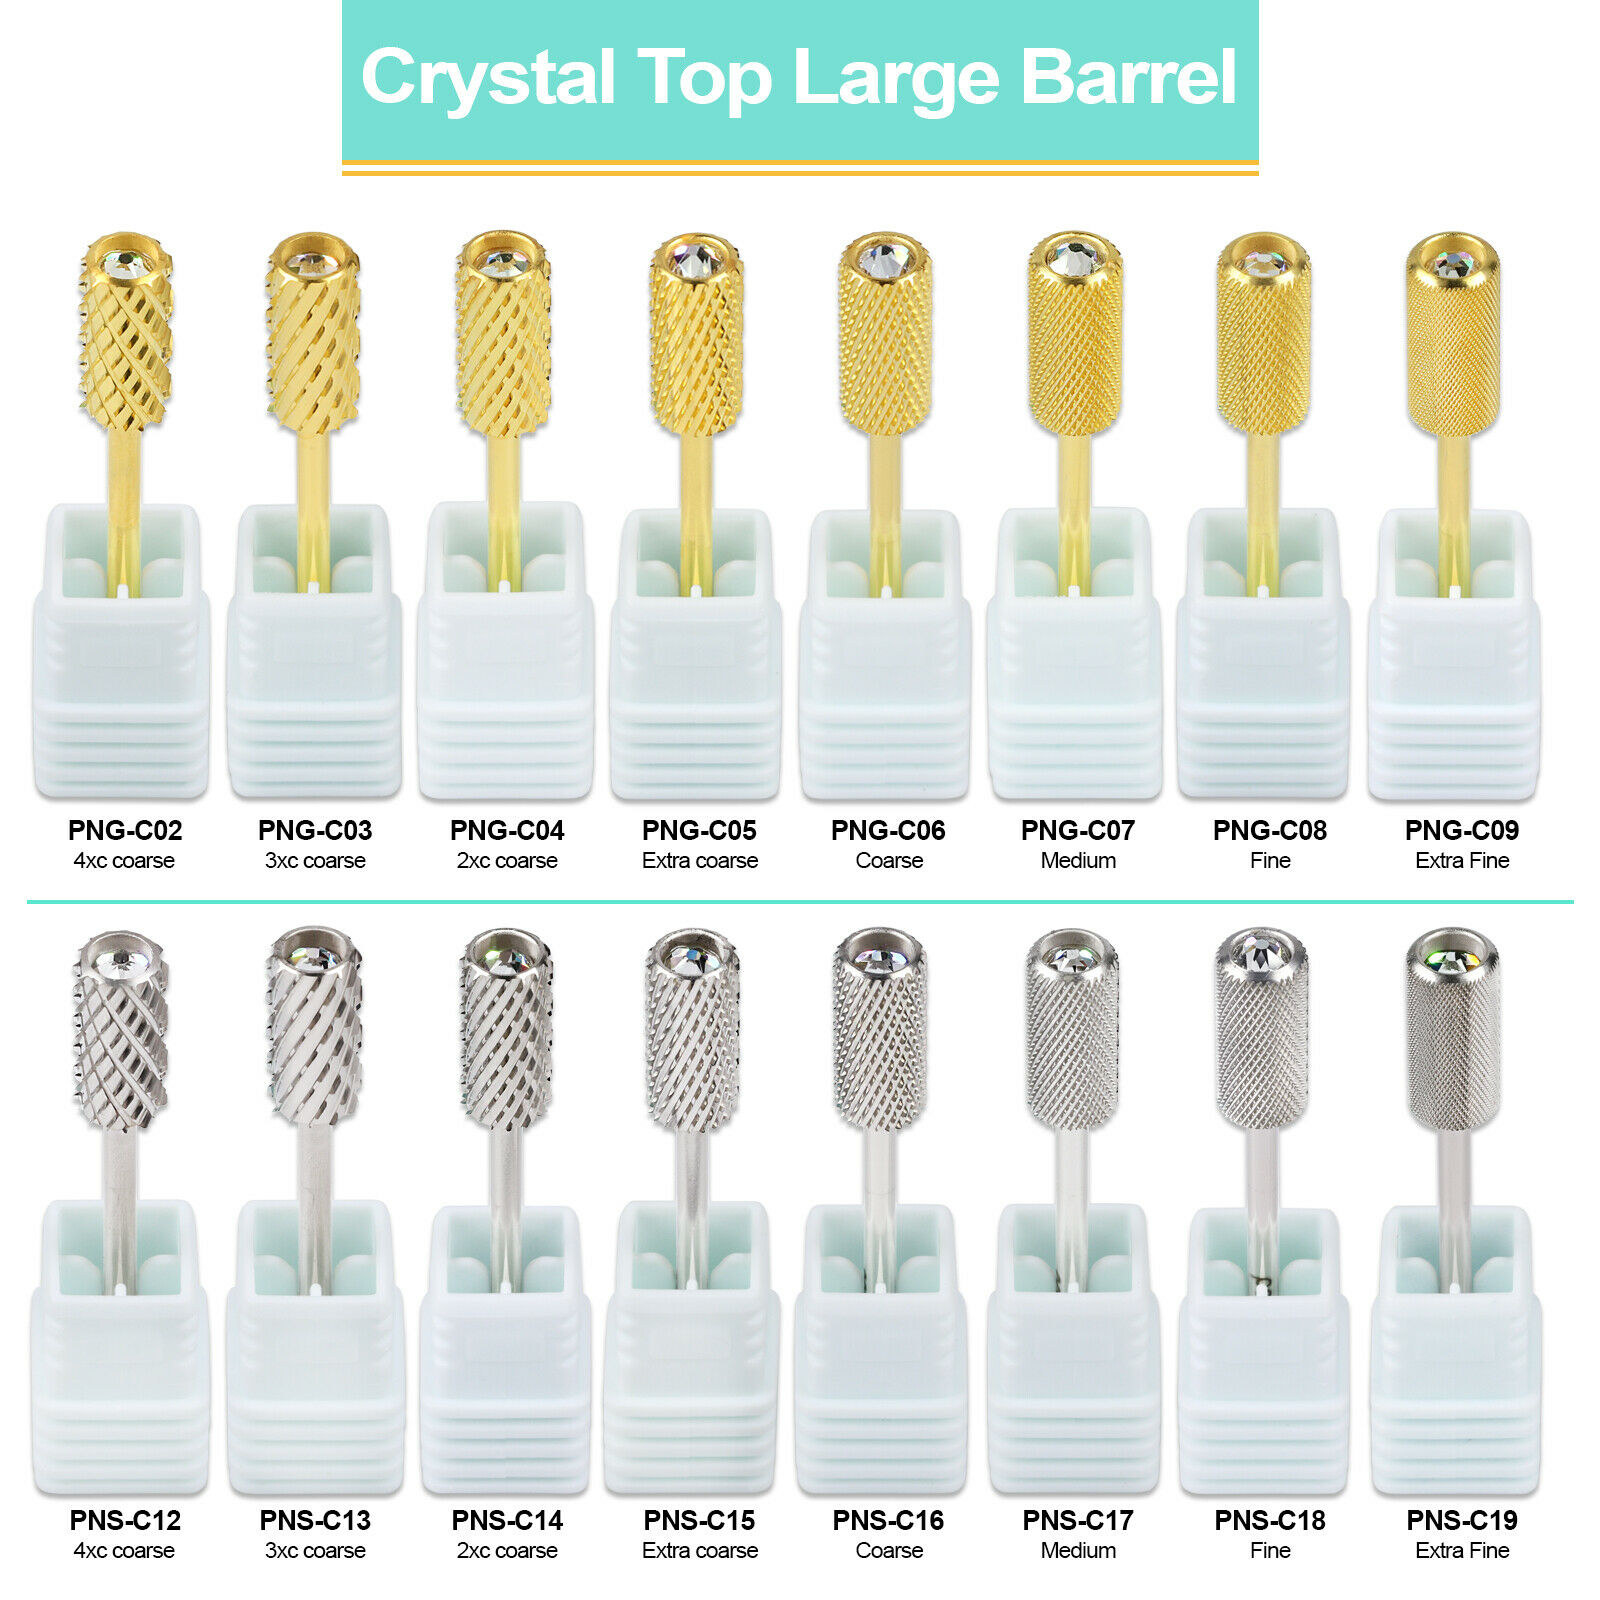 PANA Crystal Top Large/Small Barrel Nail Carbide Bit-Shank 3/32